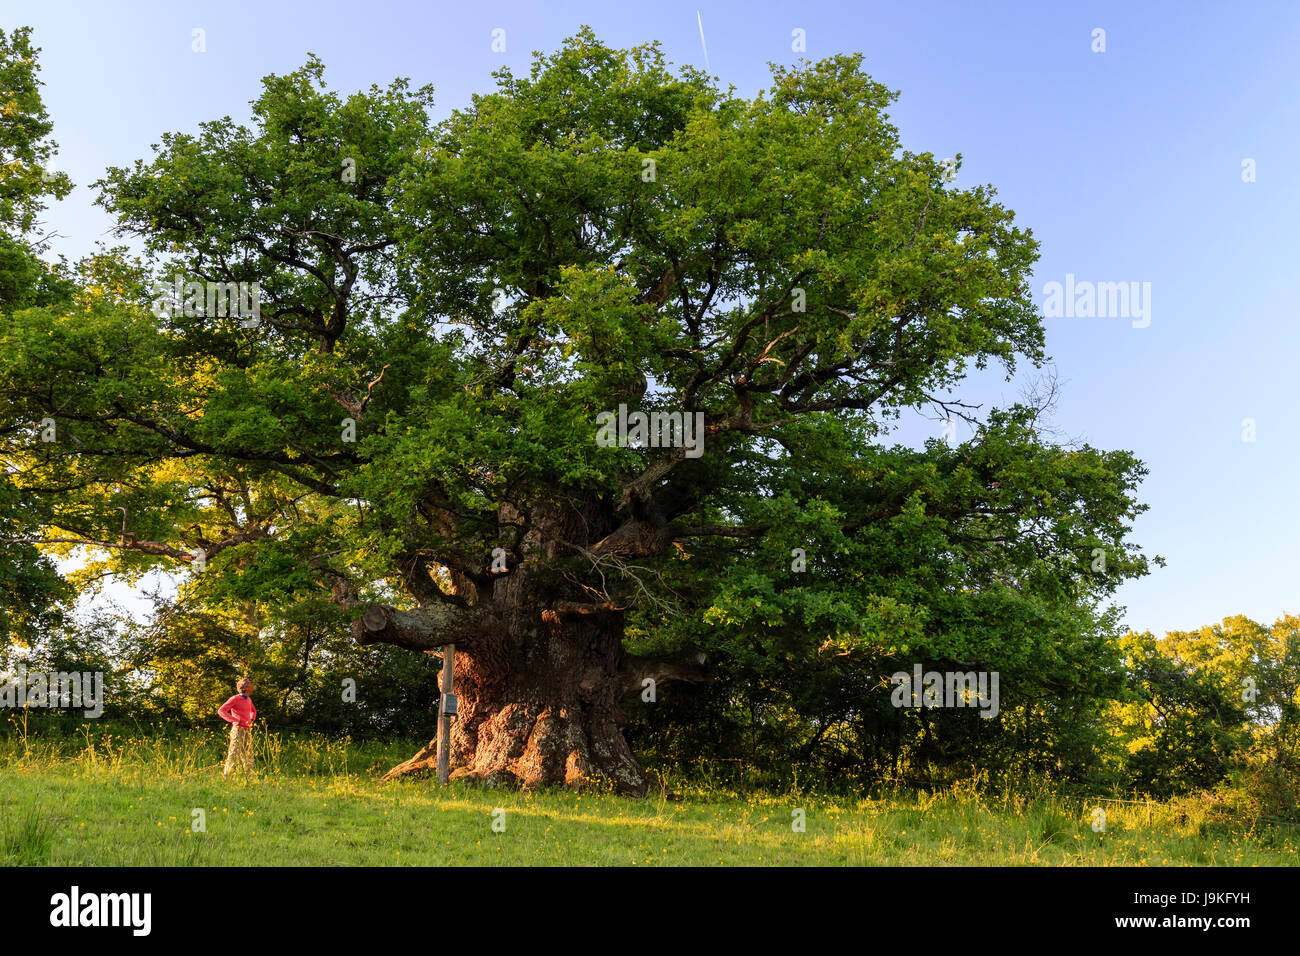 France, Indre, Saint Civran, vieux chêne remarquable de la bitte (localité) Banque D'Images